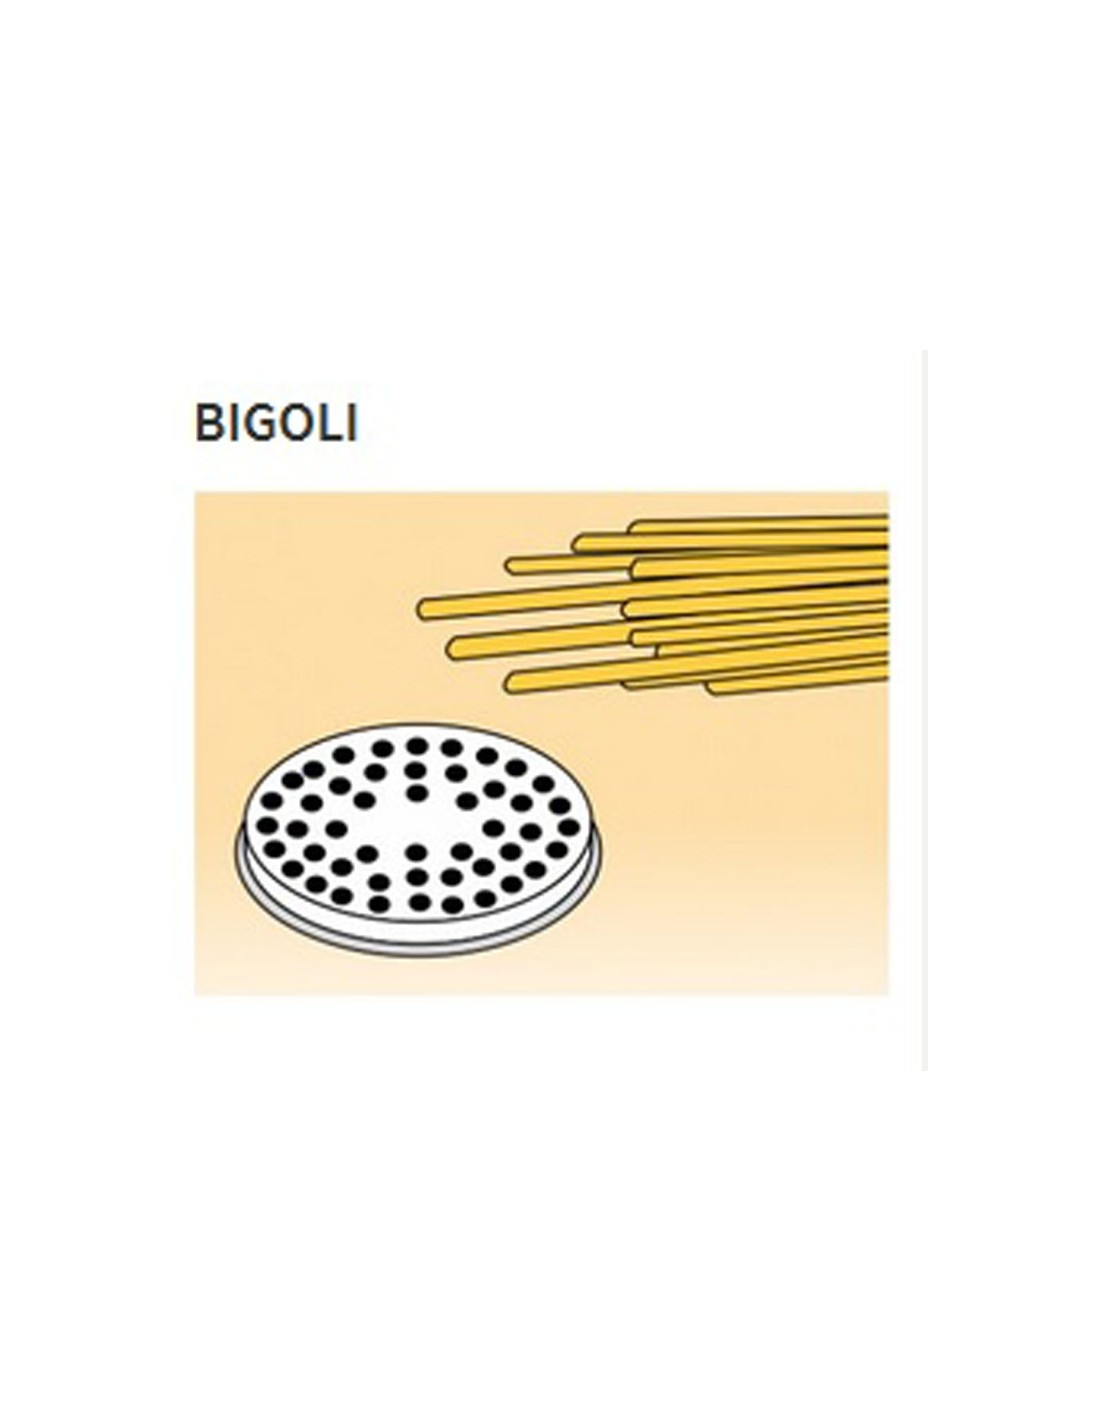 Trafile formati vari in lega ottone - Bronzo - Per macchina pasta fresca modello MPF8N - Bigoli Ø mm 3